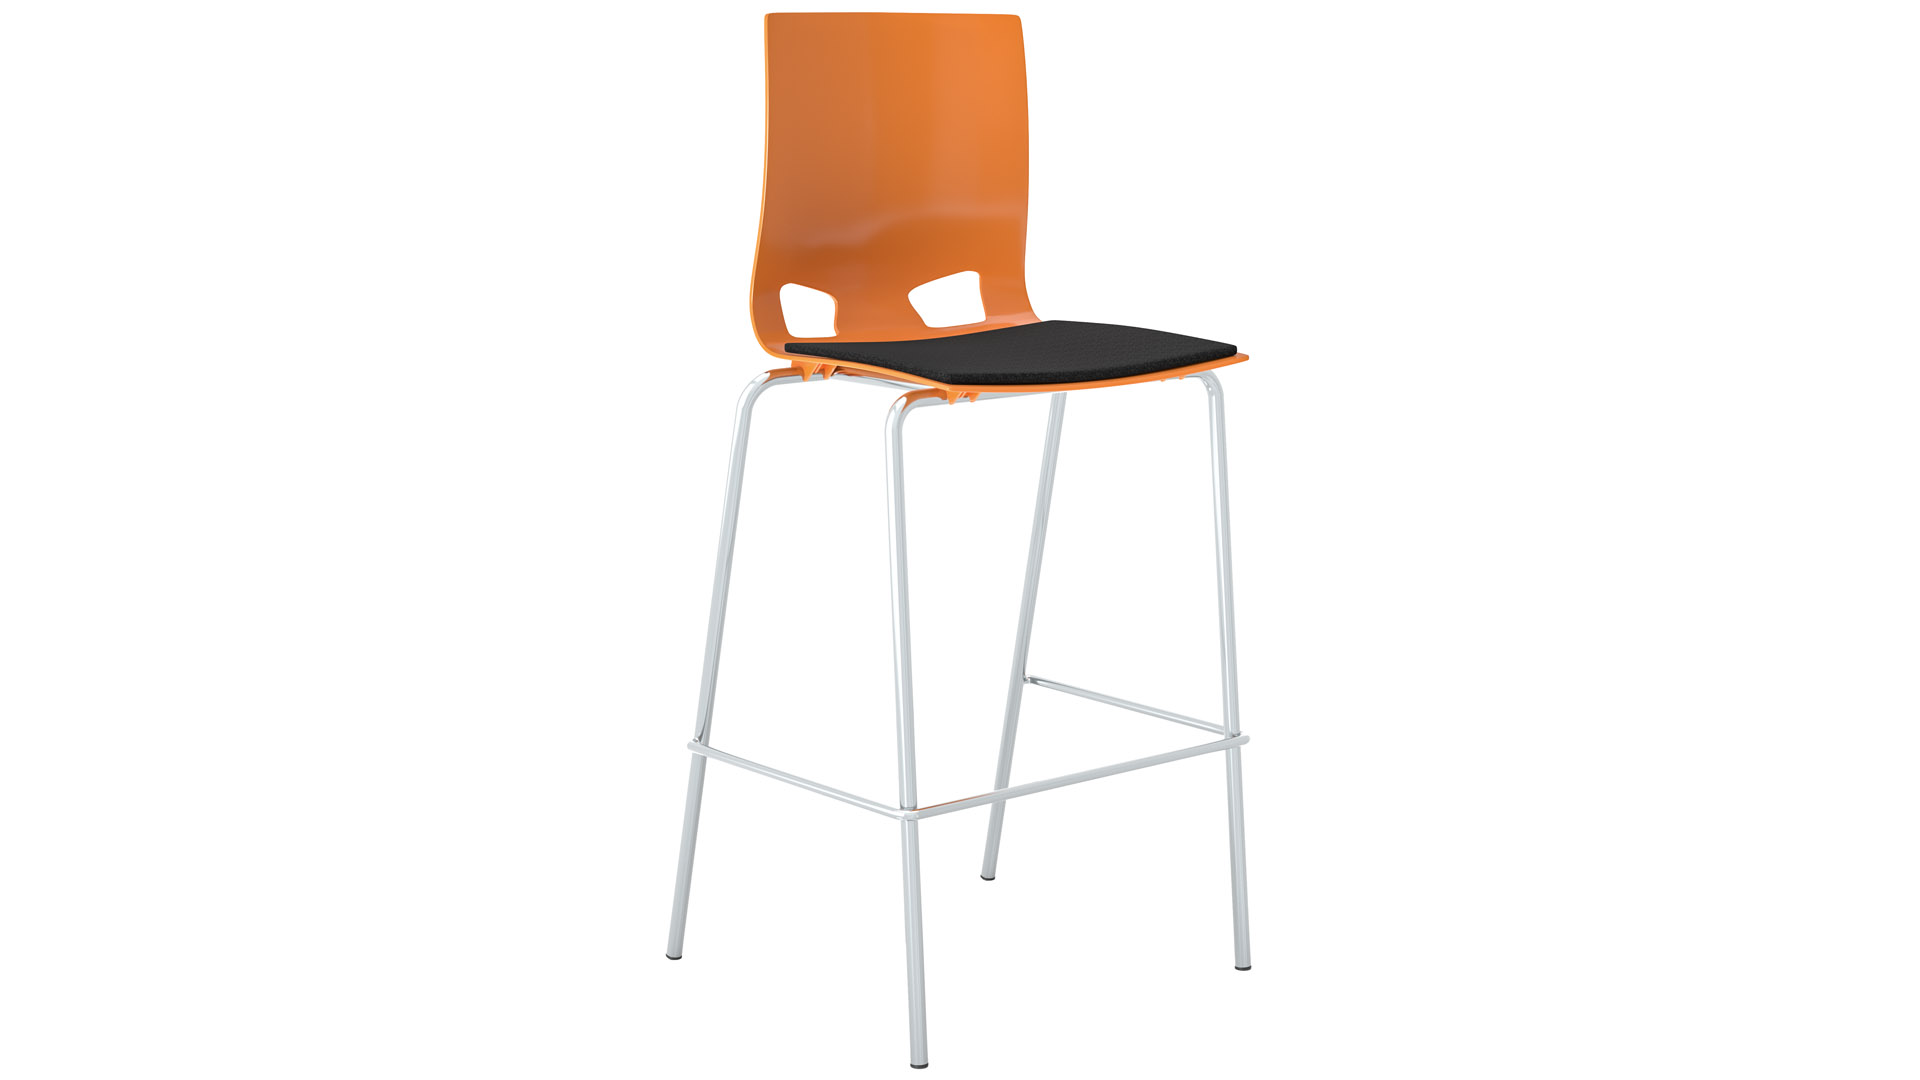 Barhocker mit Fußstütze, stapelbar, Gestell verchromt, Sitz Kunststoff, mit Polster, orange